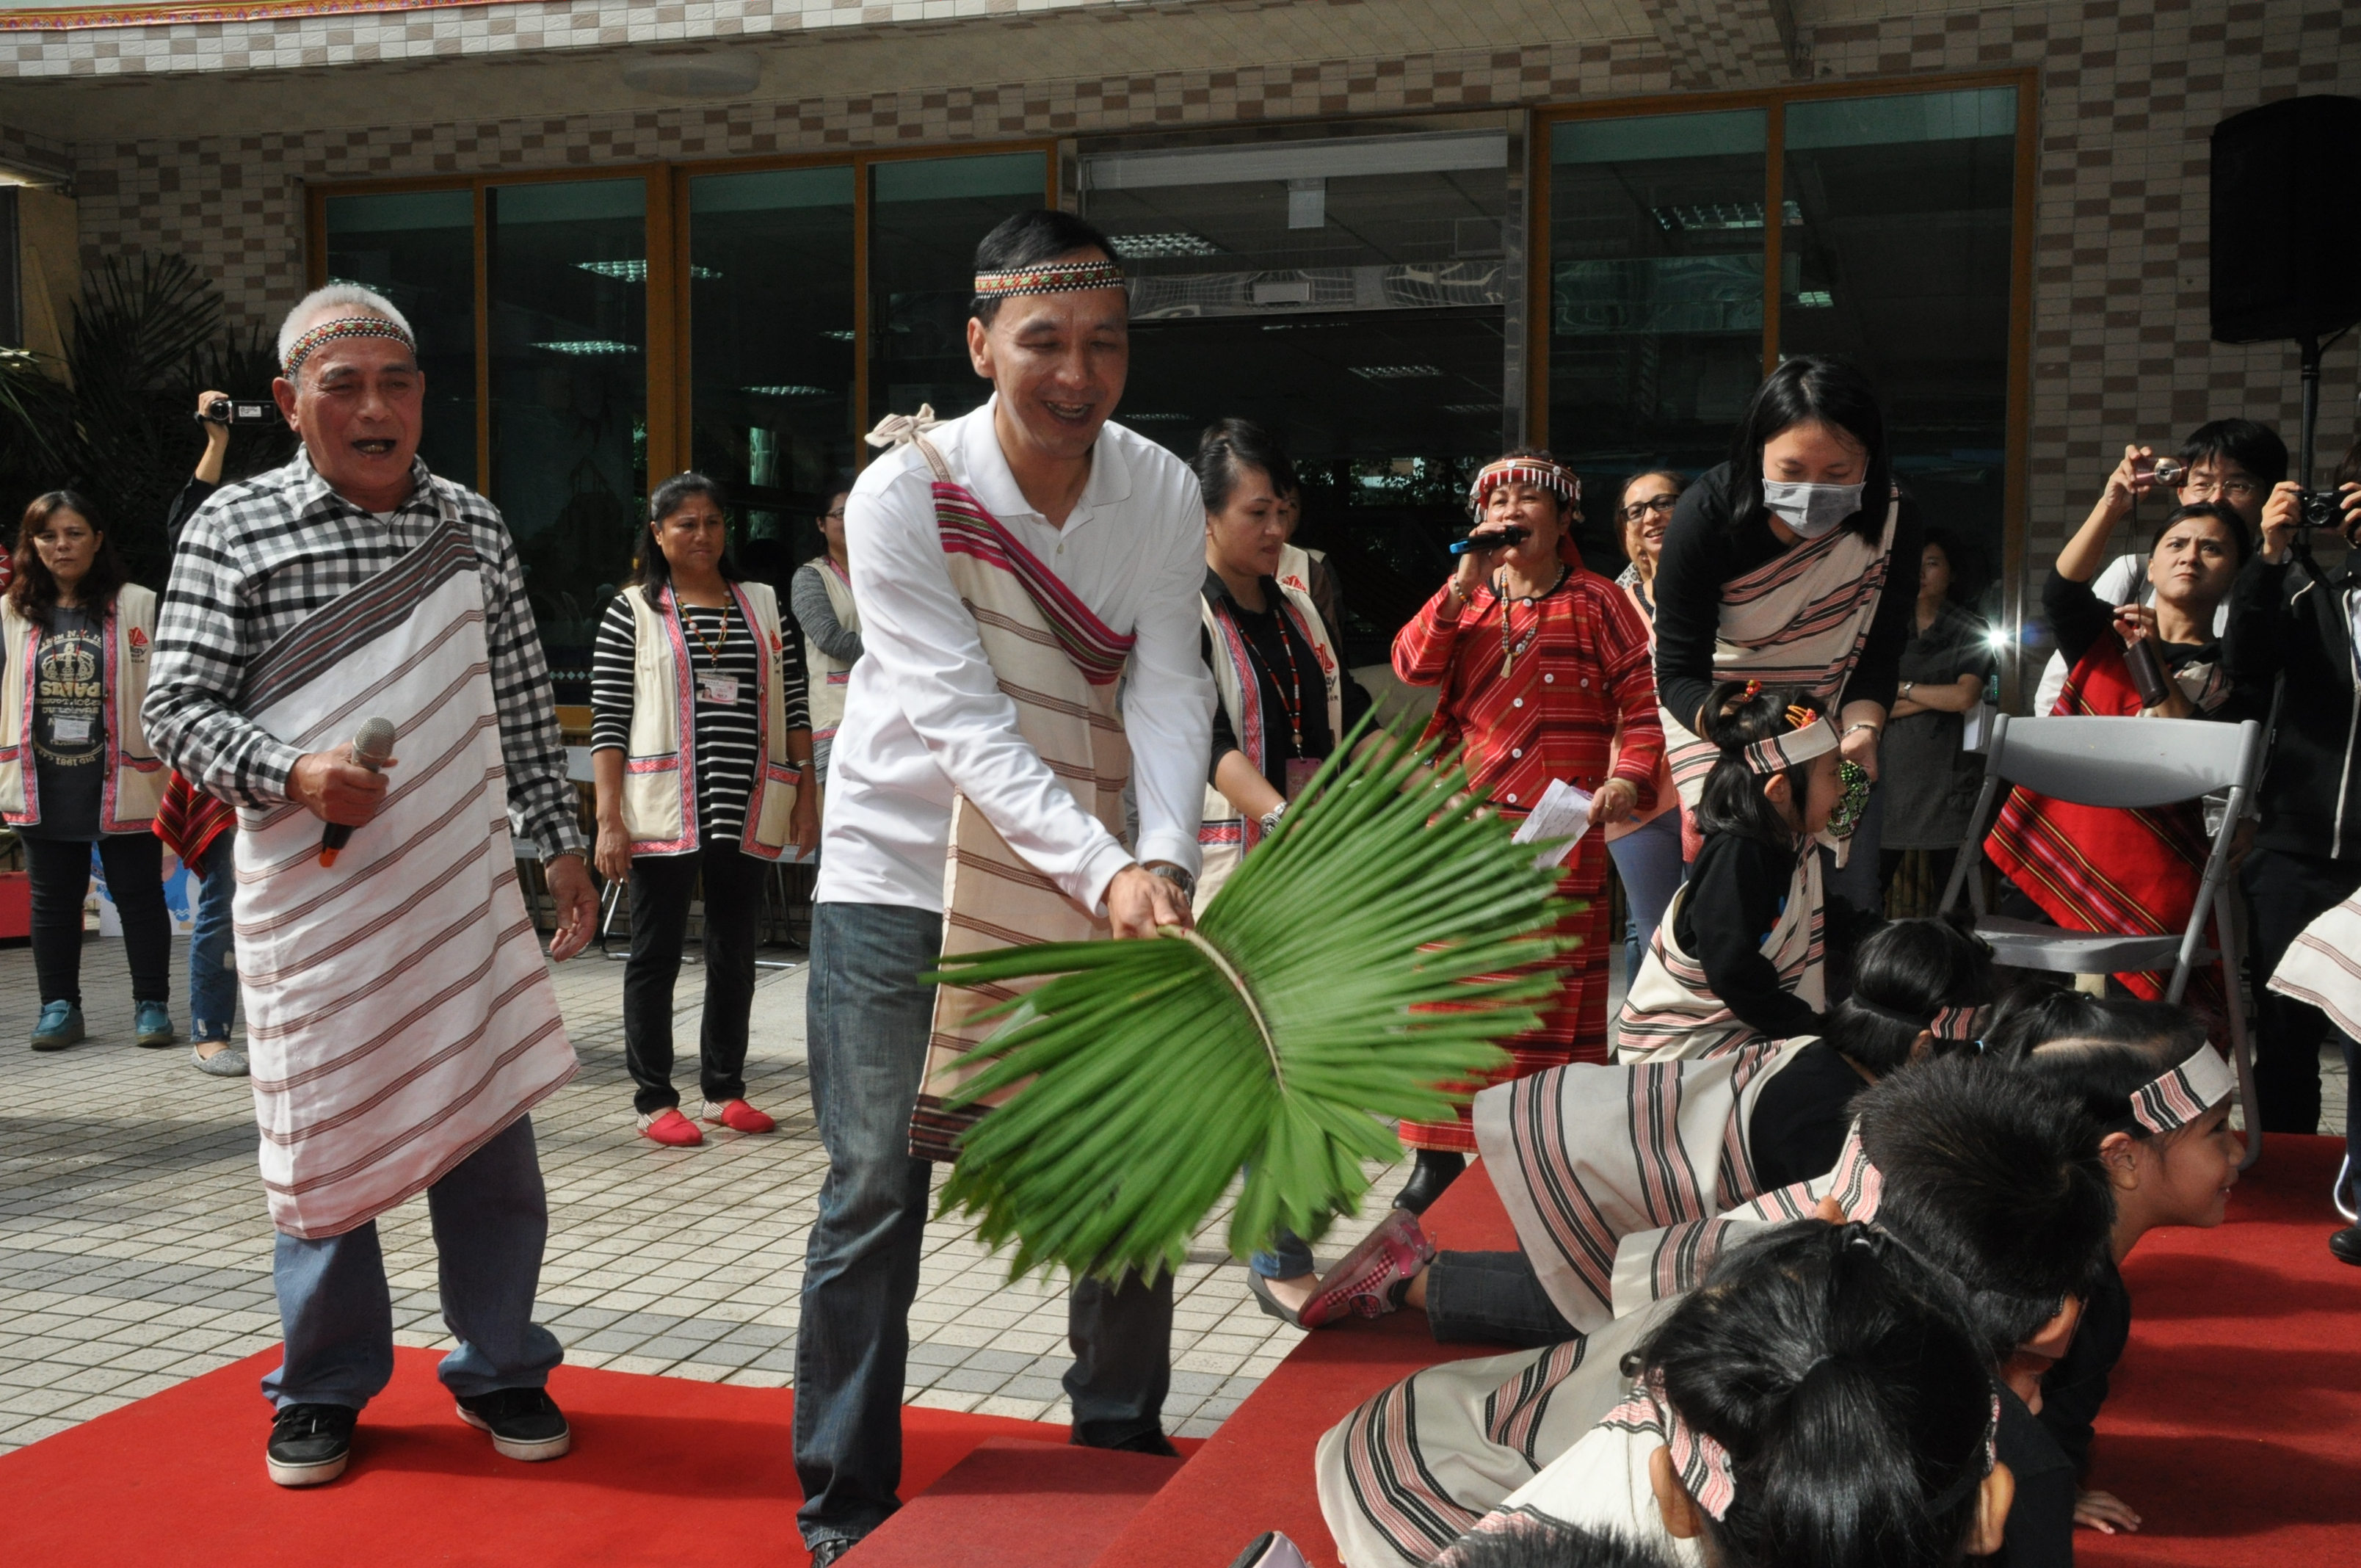 以泰雅族傳統文化為主題烏來泰雅公共親子中心啟用

繼34家公共托育中心  新北市完成12座公共親子中心

    朱立倫：歡迎「尤答斯」和「雅企」帶著「Lagi」一起同樂                                        
